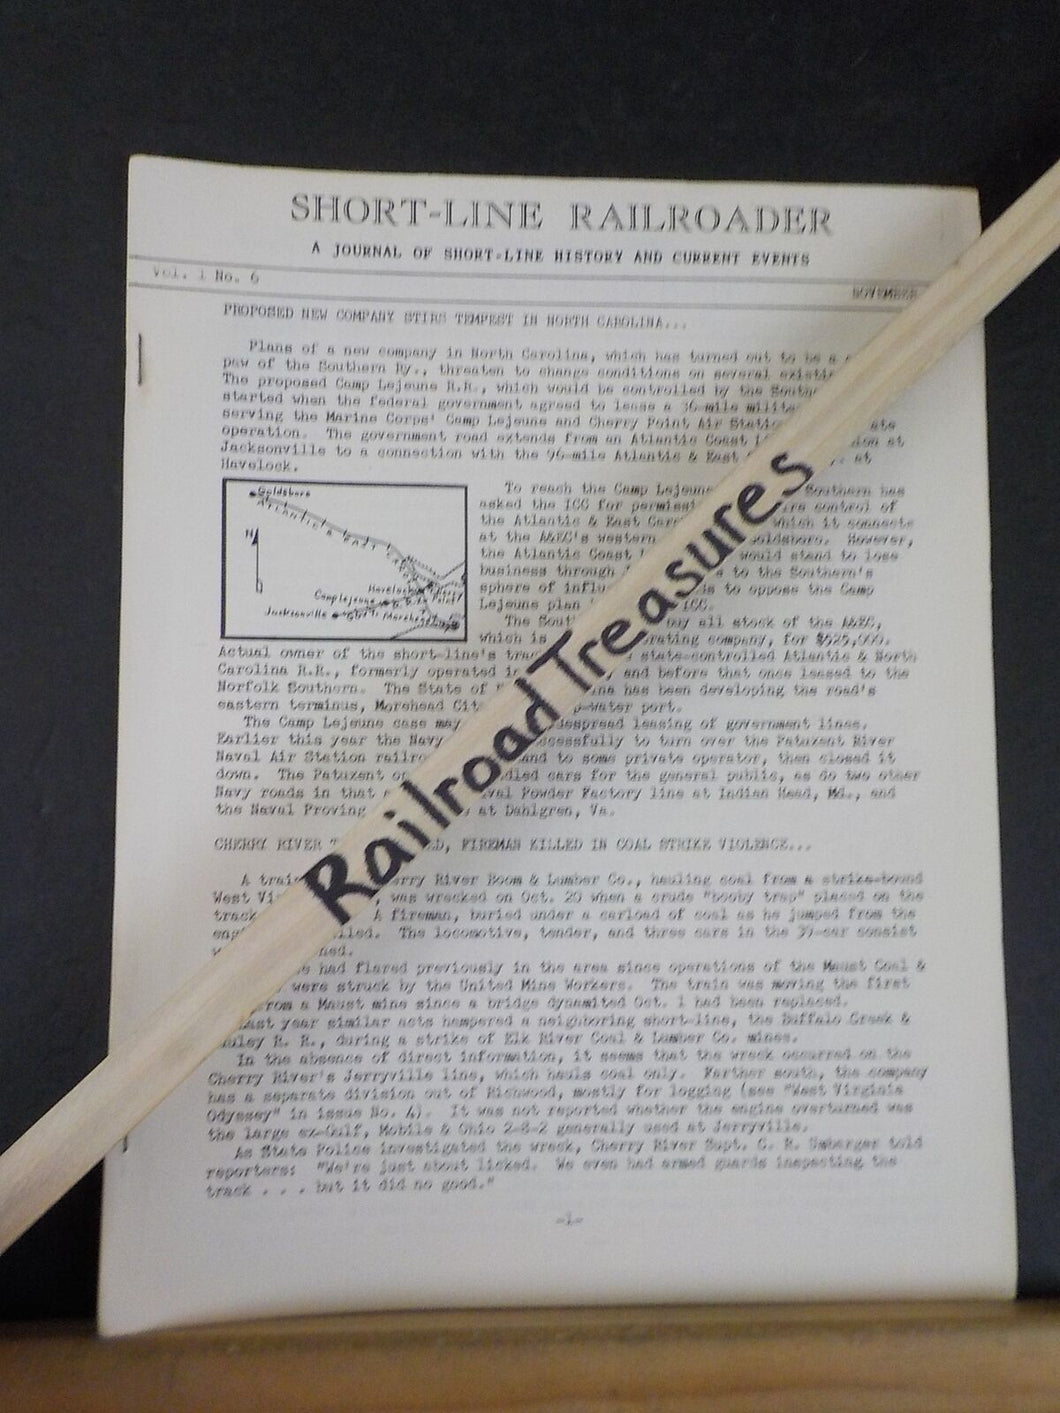 Short-Line Railroader #6 1954 November Southern Railway Camp Lejune RR